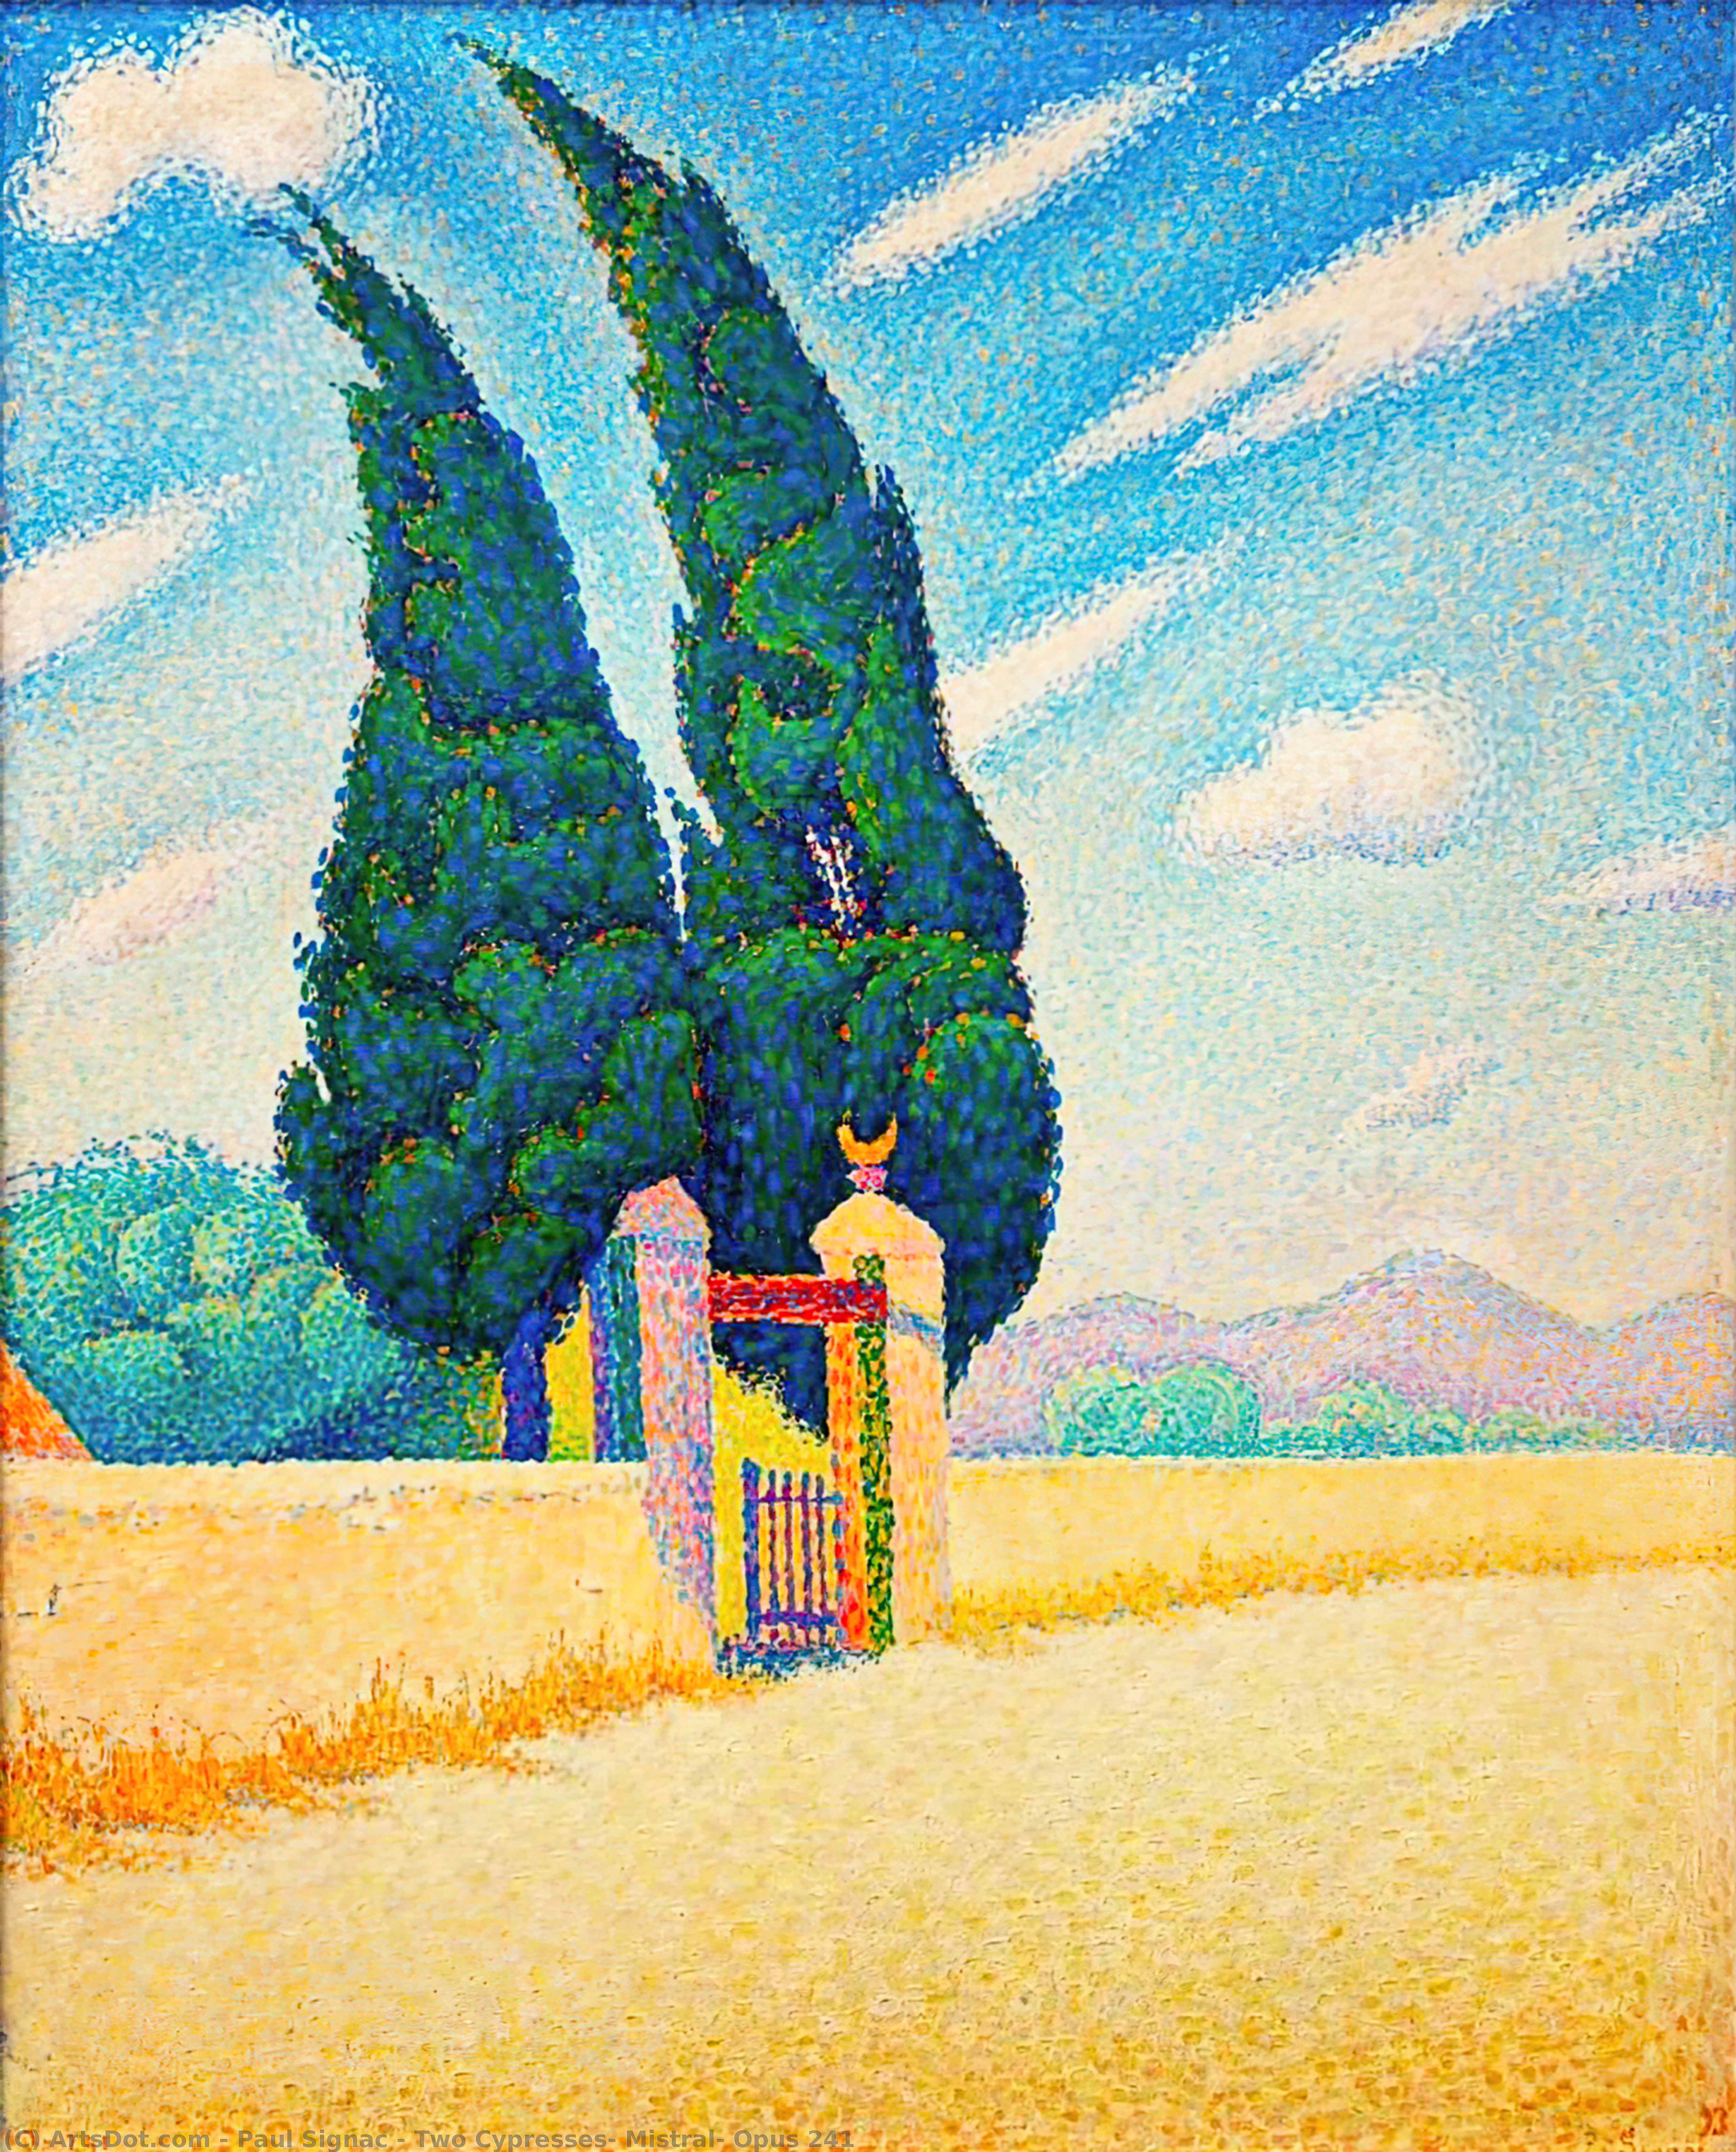 Wikoo.org - موسوعة الفنون الجميلة - اللوحة، العمل الفني Paul Signac - Two Cypresses, Mistral, Opus 241